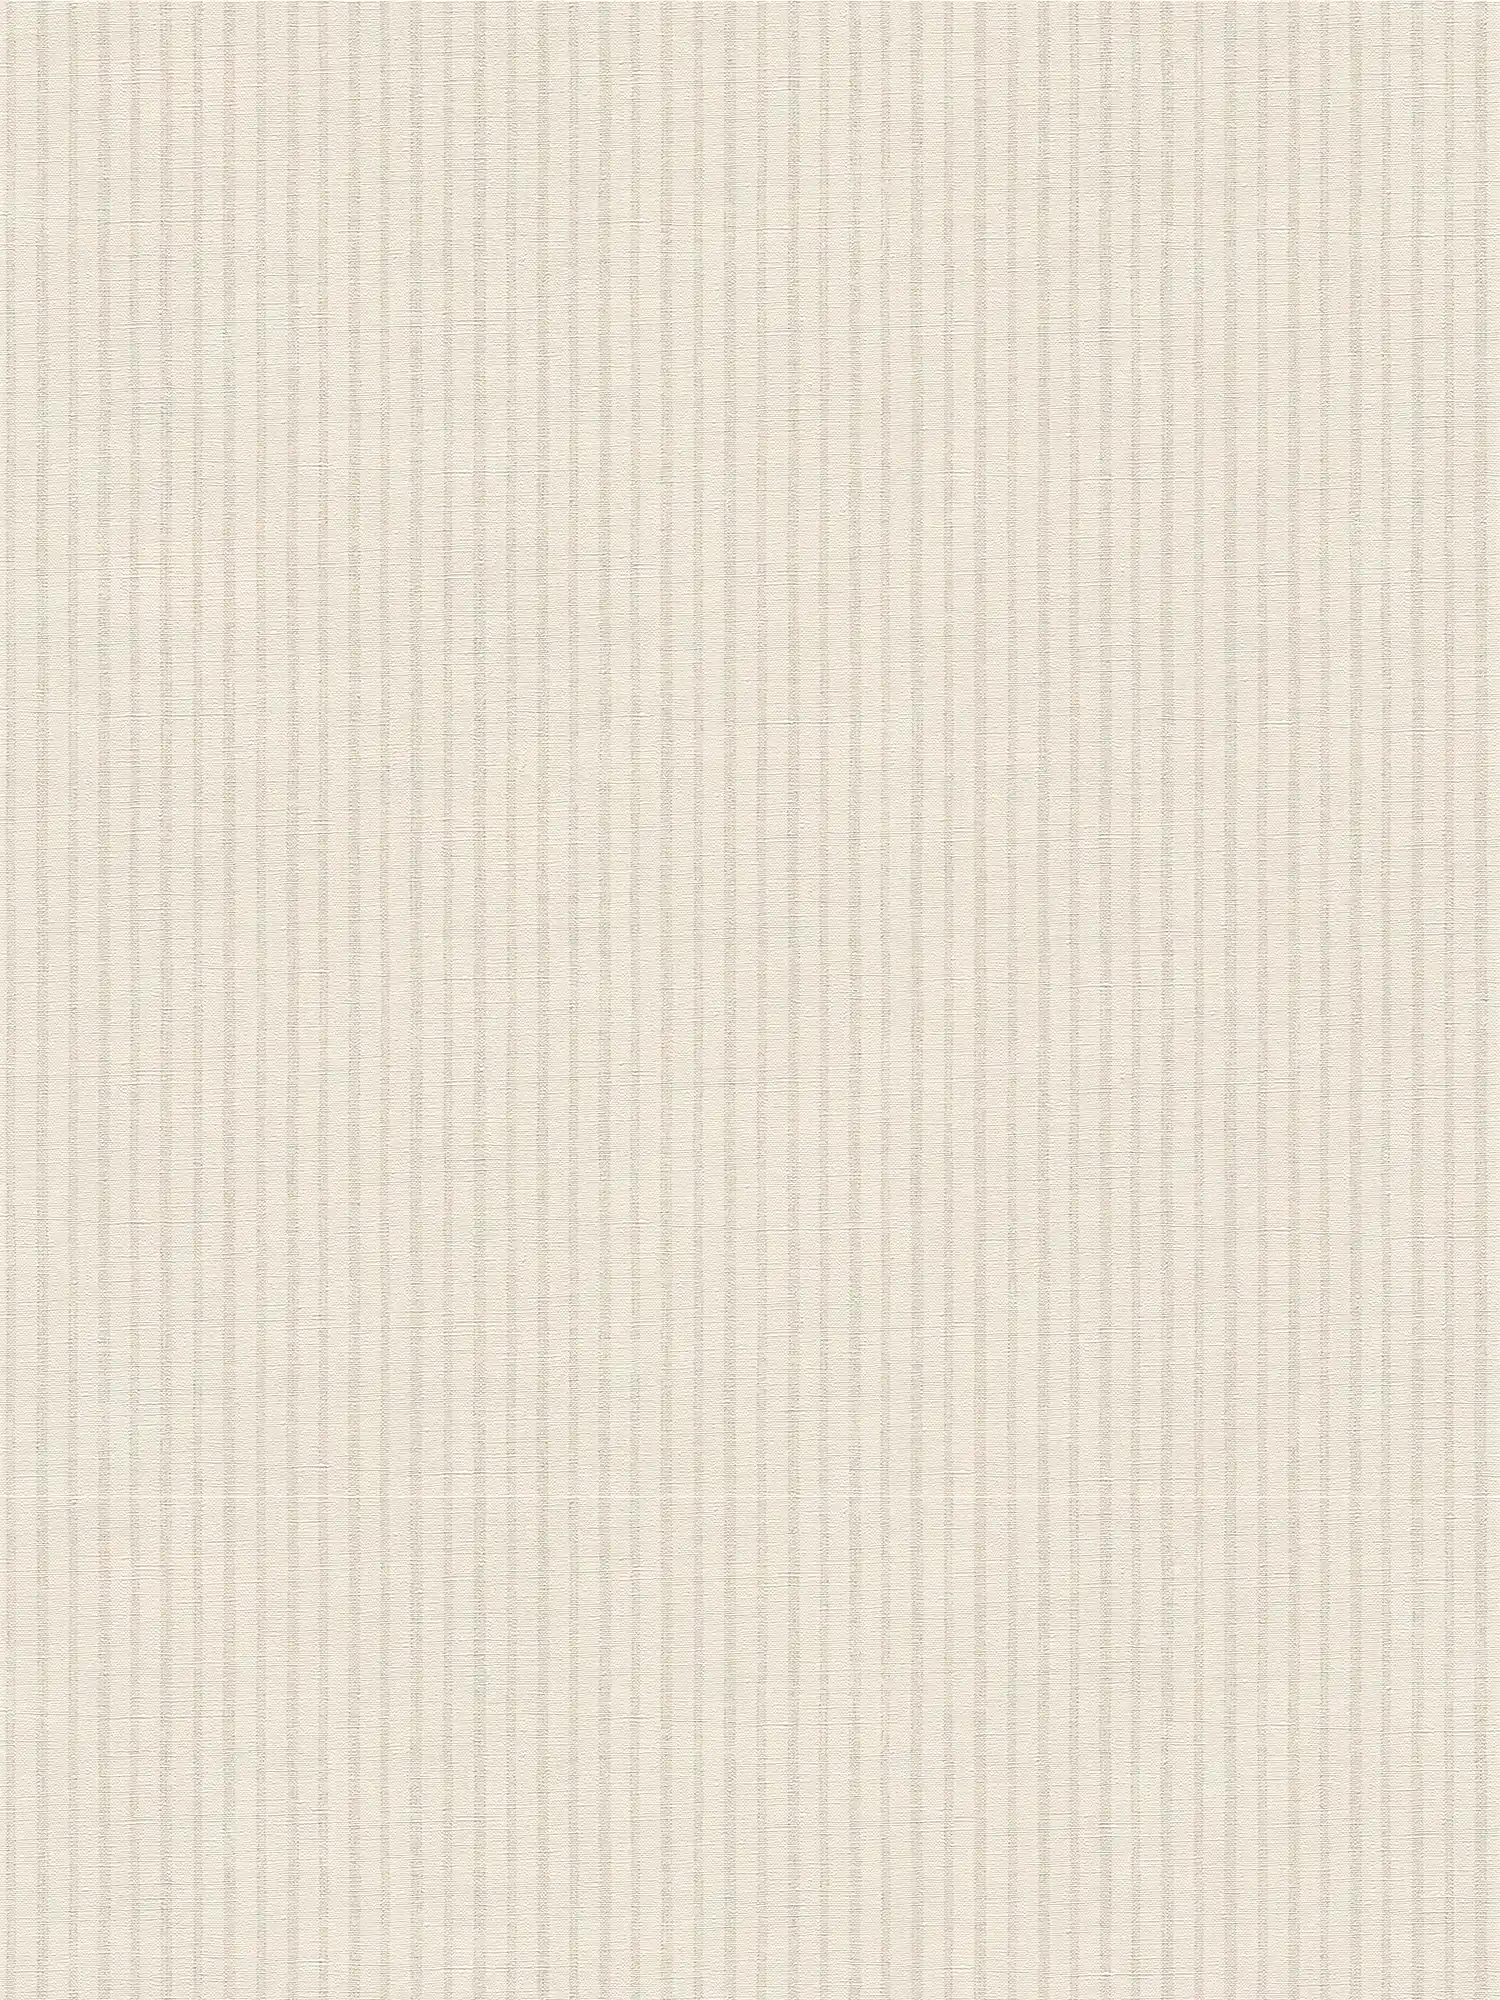 Carta da parati in tessuto non tessuto a righe sottili in stile country - bianco, grigio
